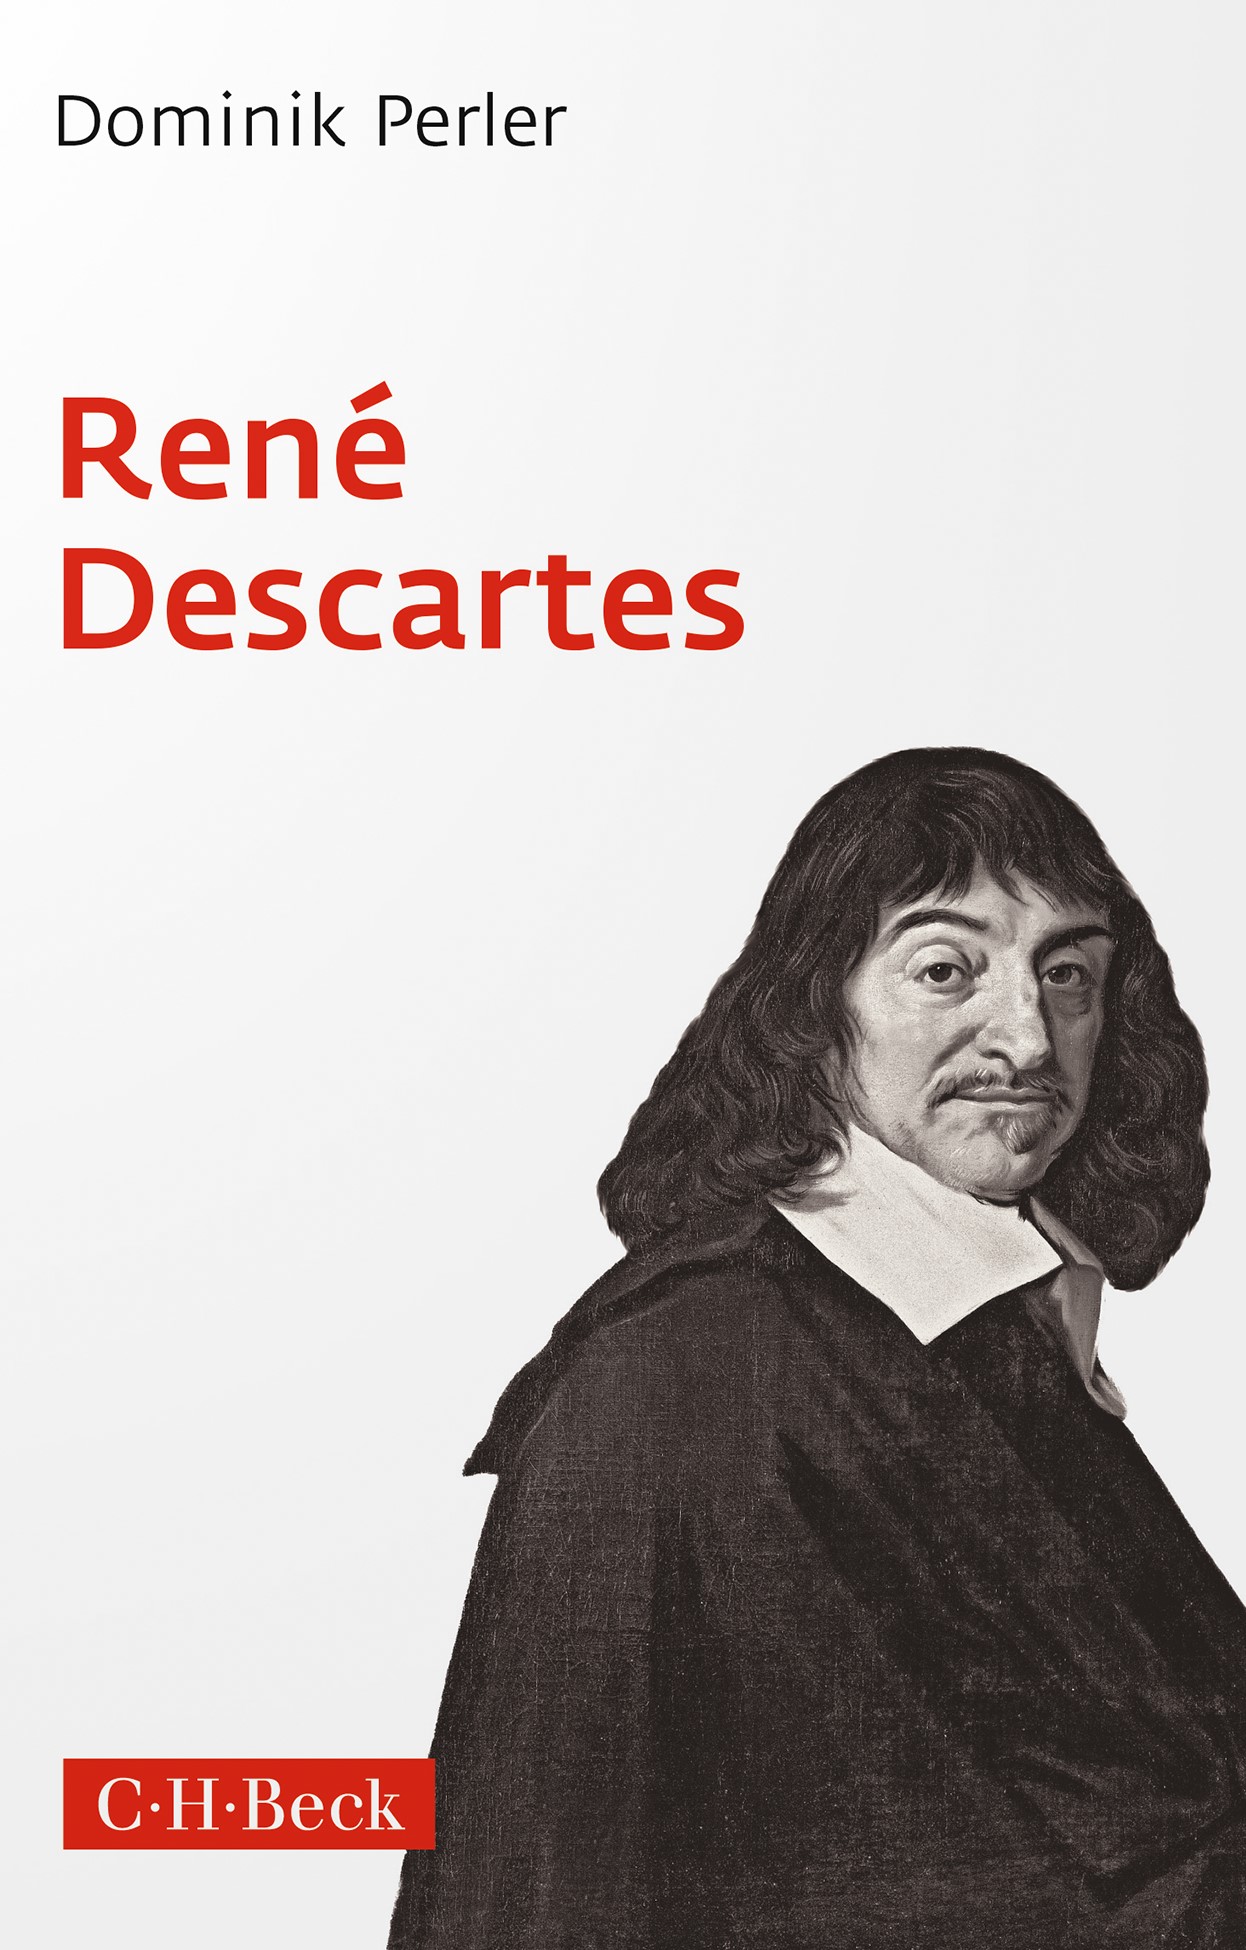 Cover: Perler, Dominik, René Descartes